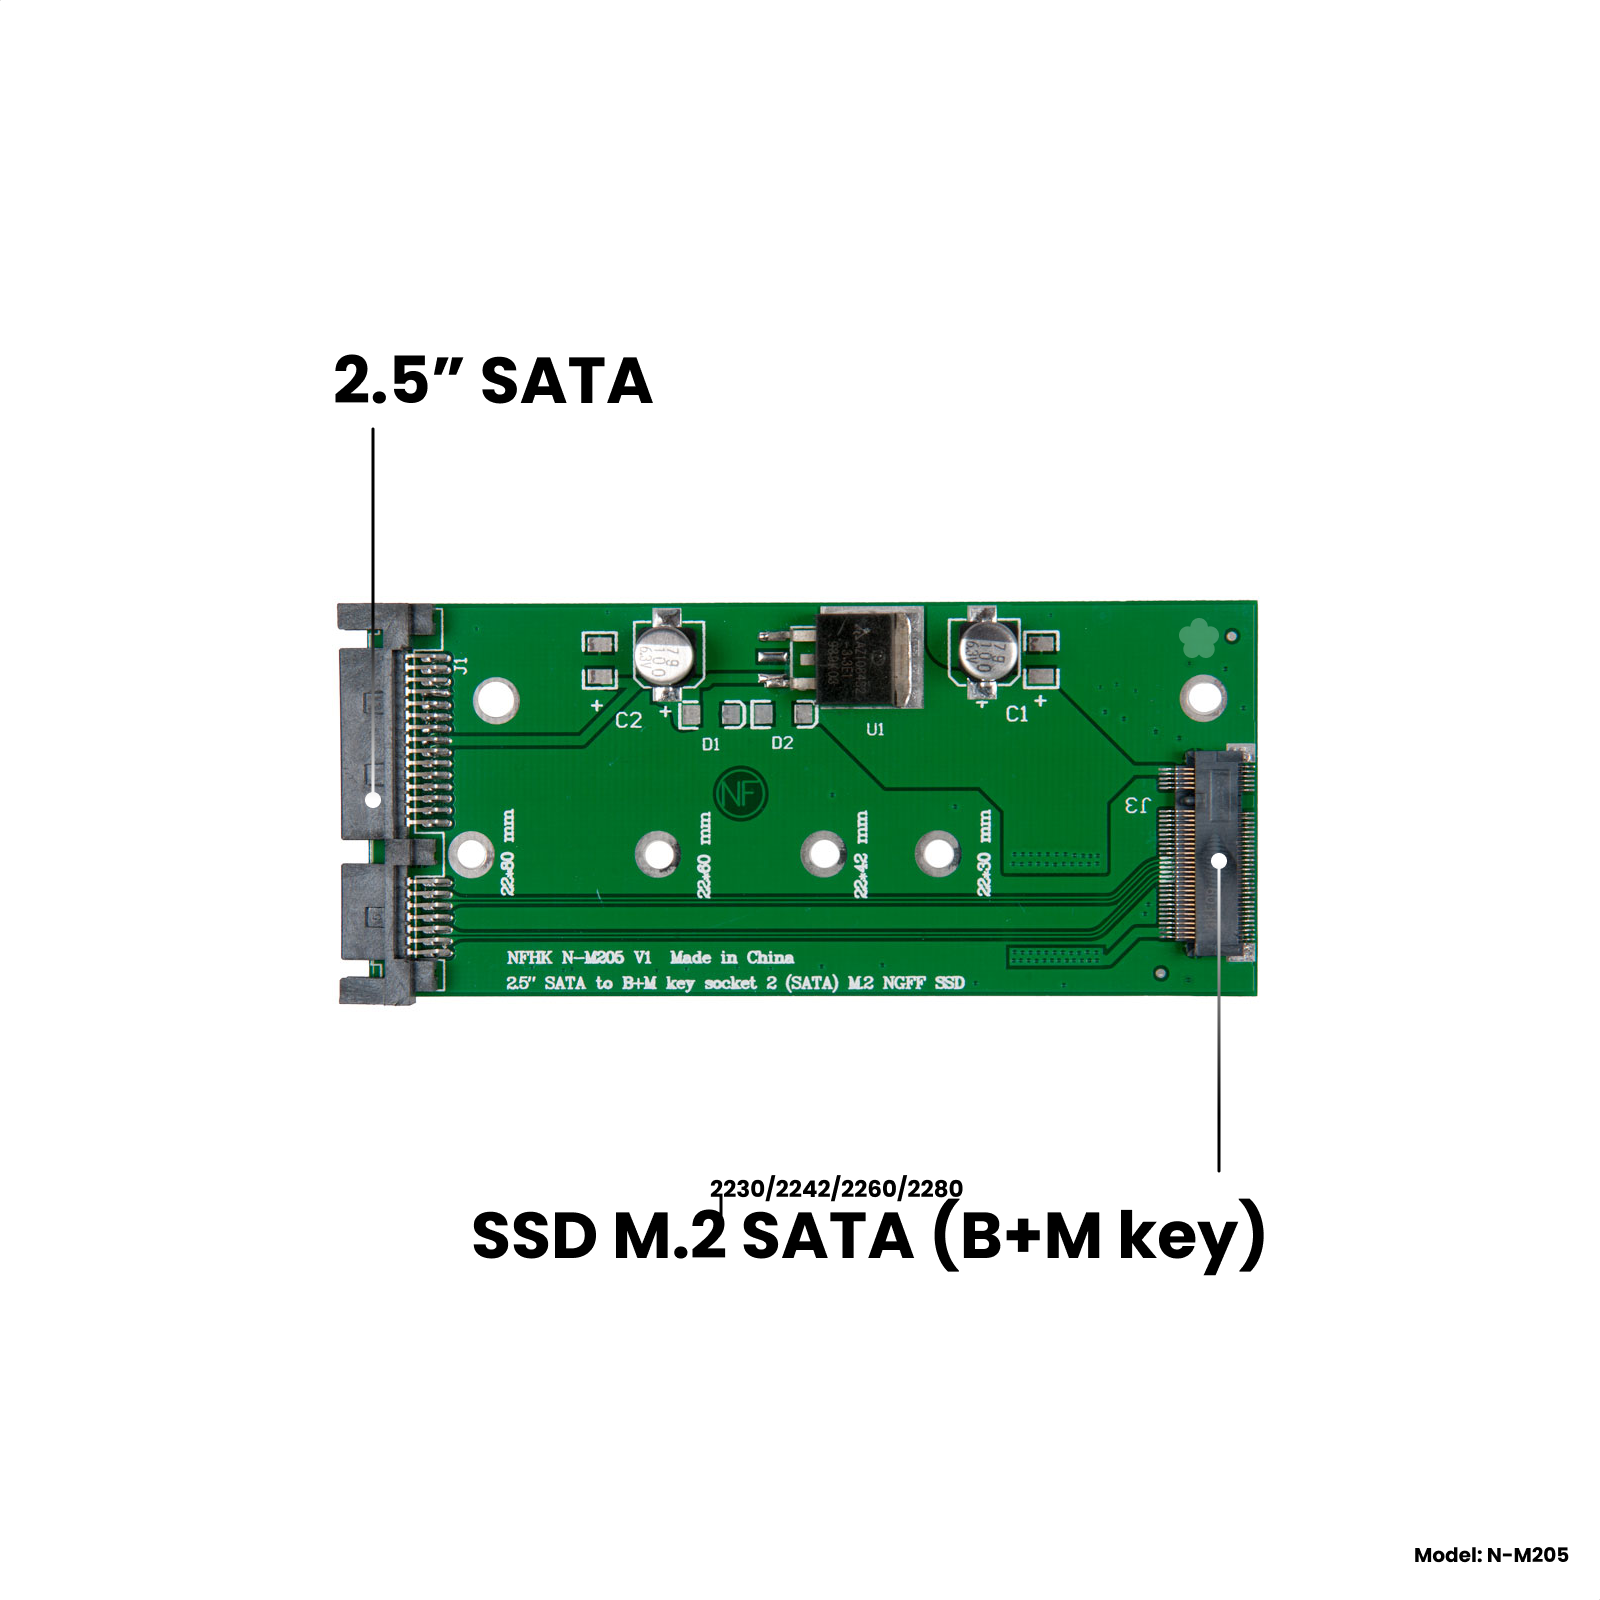 Адаптер-переходник для установки SSD M.2 SATA (B+M key) в разъем 2.5" SATA NFHK N-M205